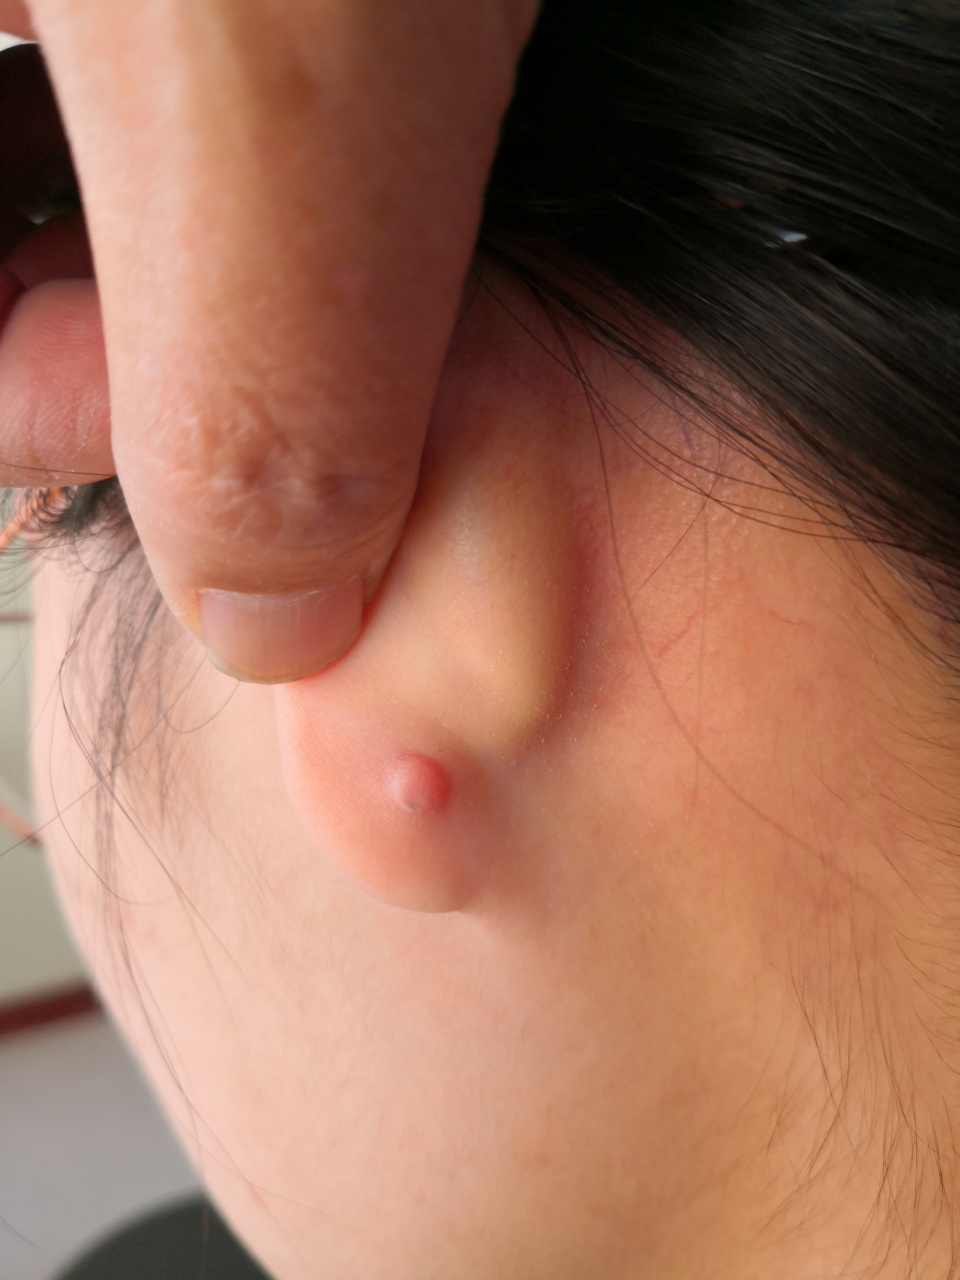 扎耳洞后出现的瘢痕疙瘩症状